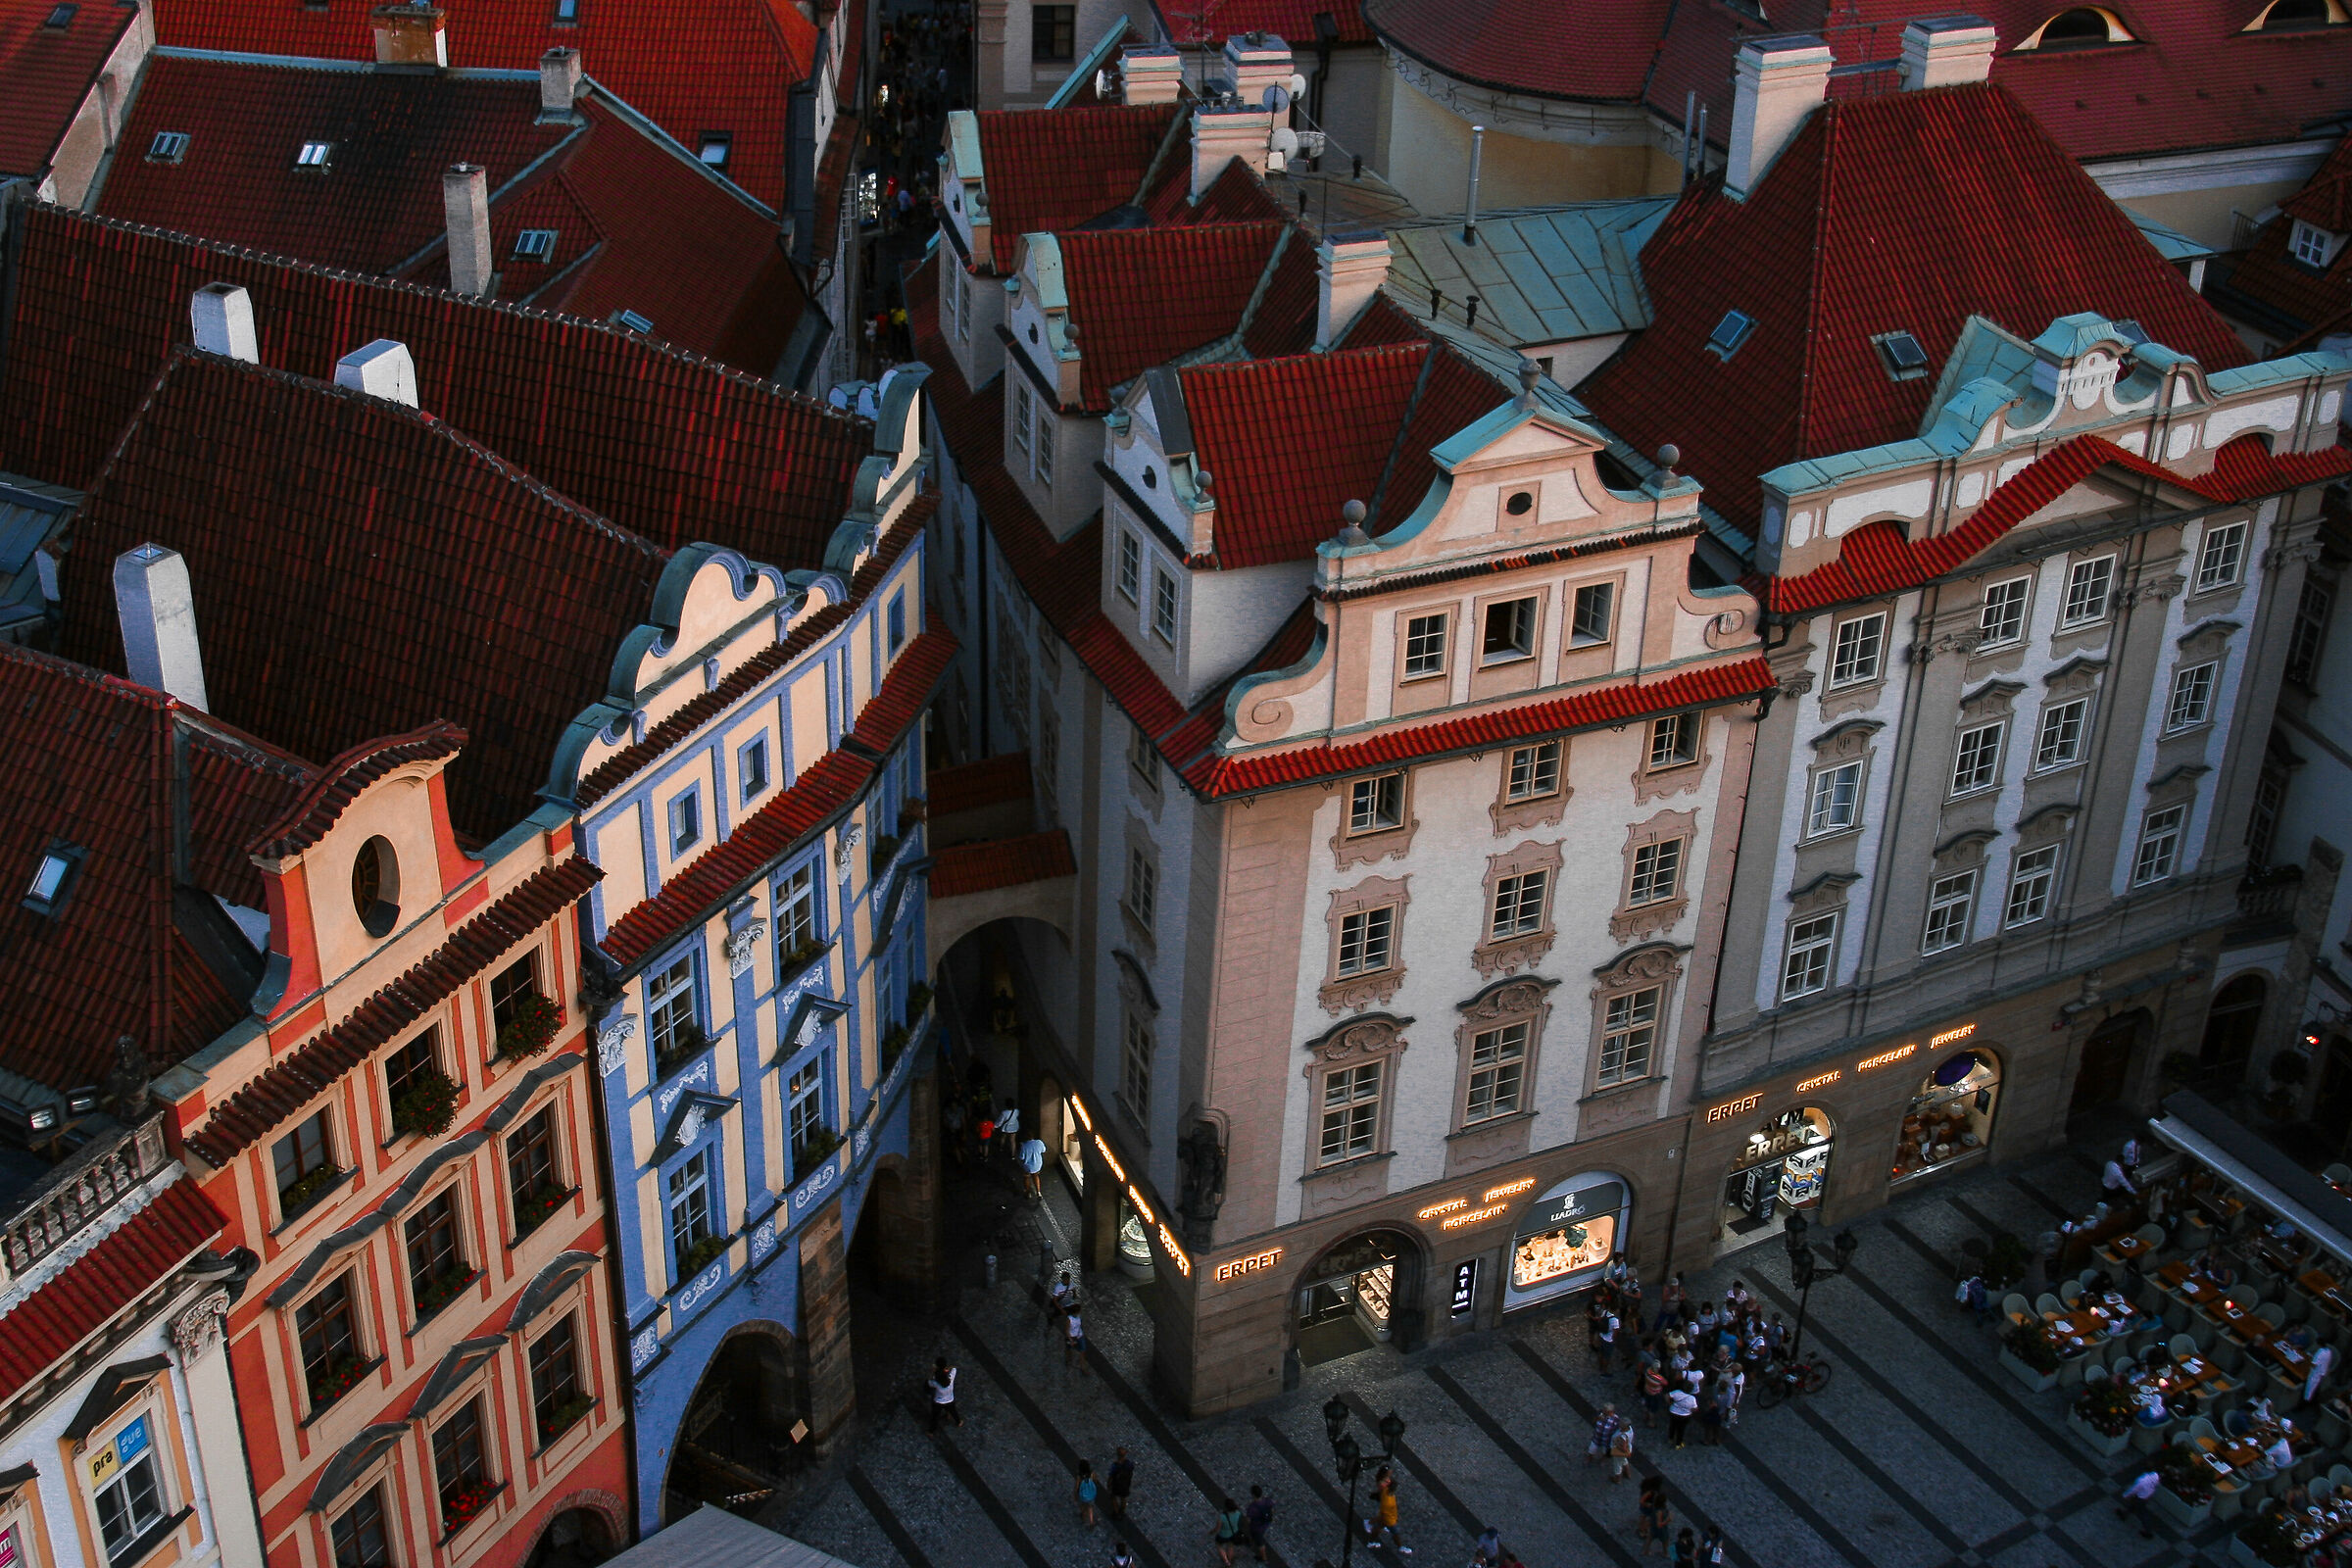 Praga immersa nei suoi colori...